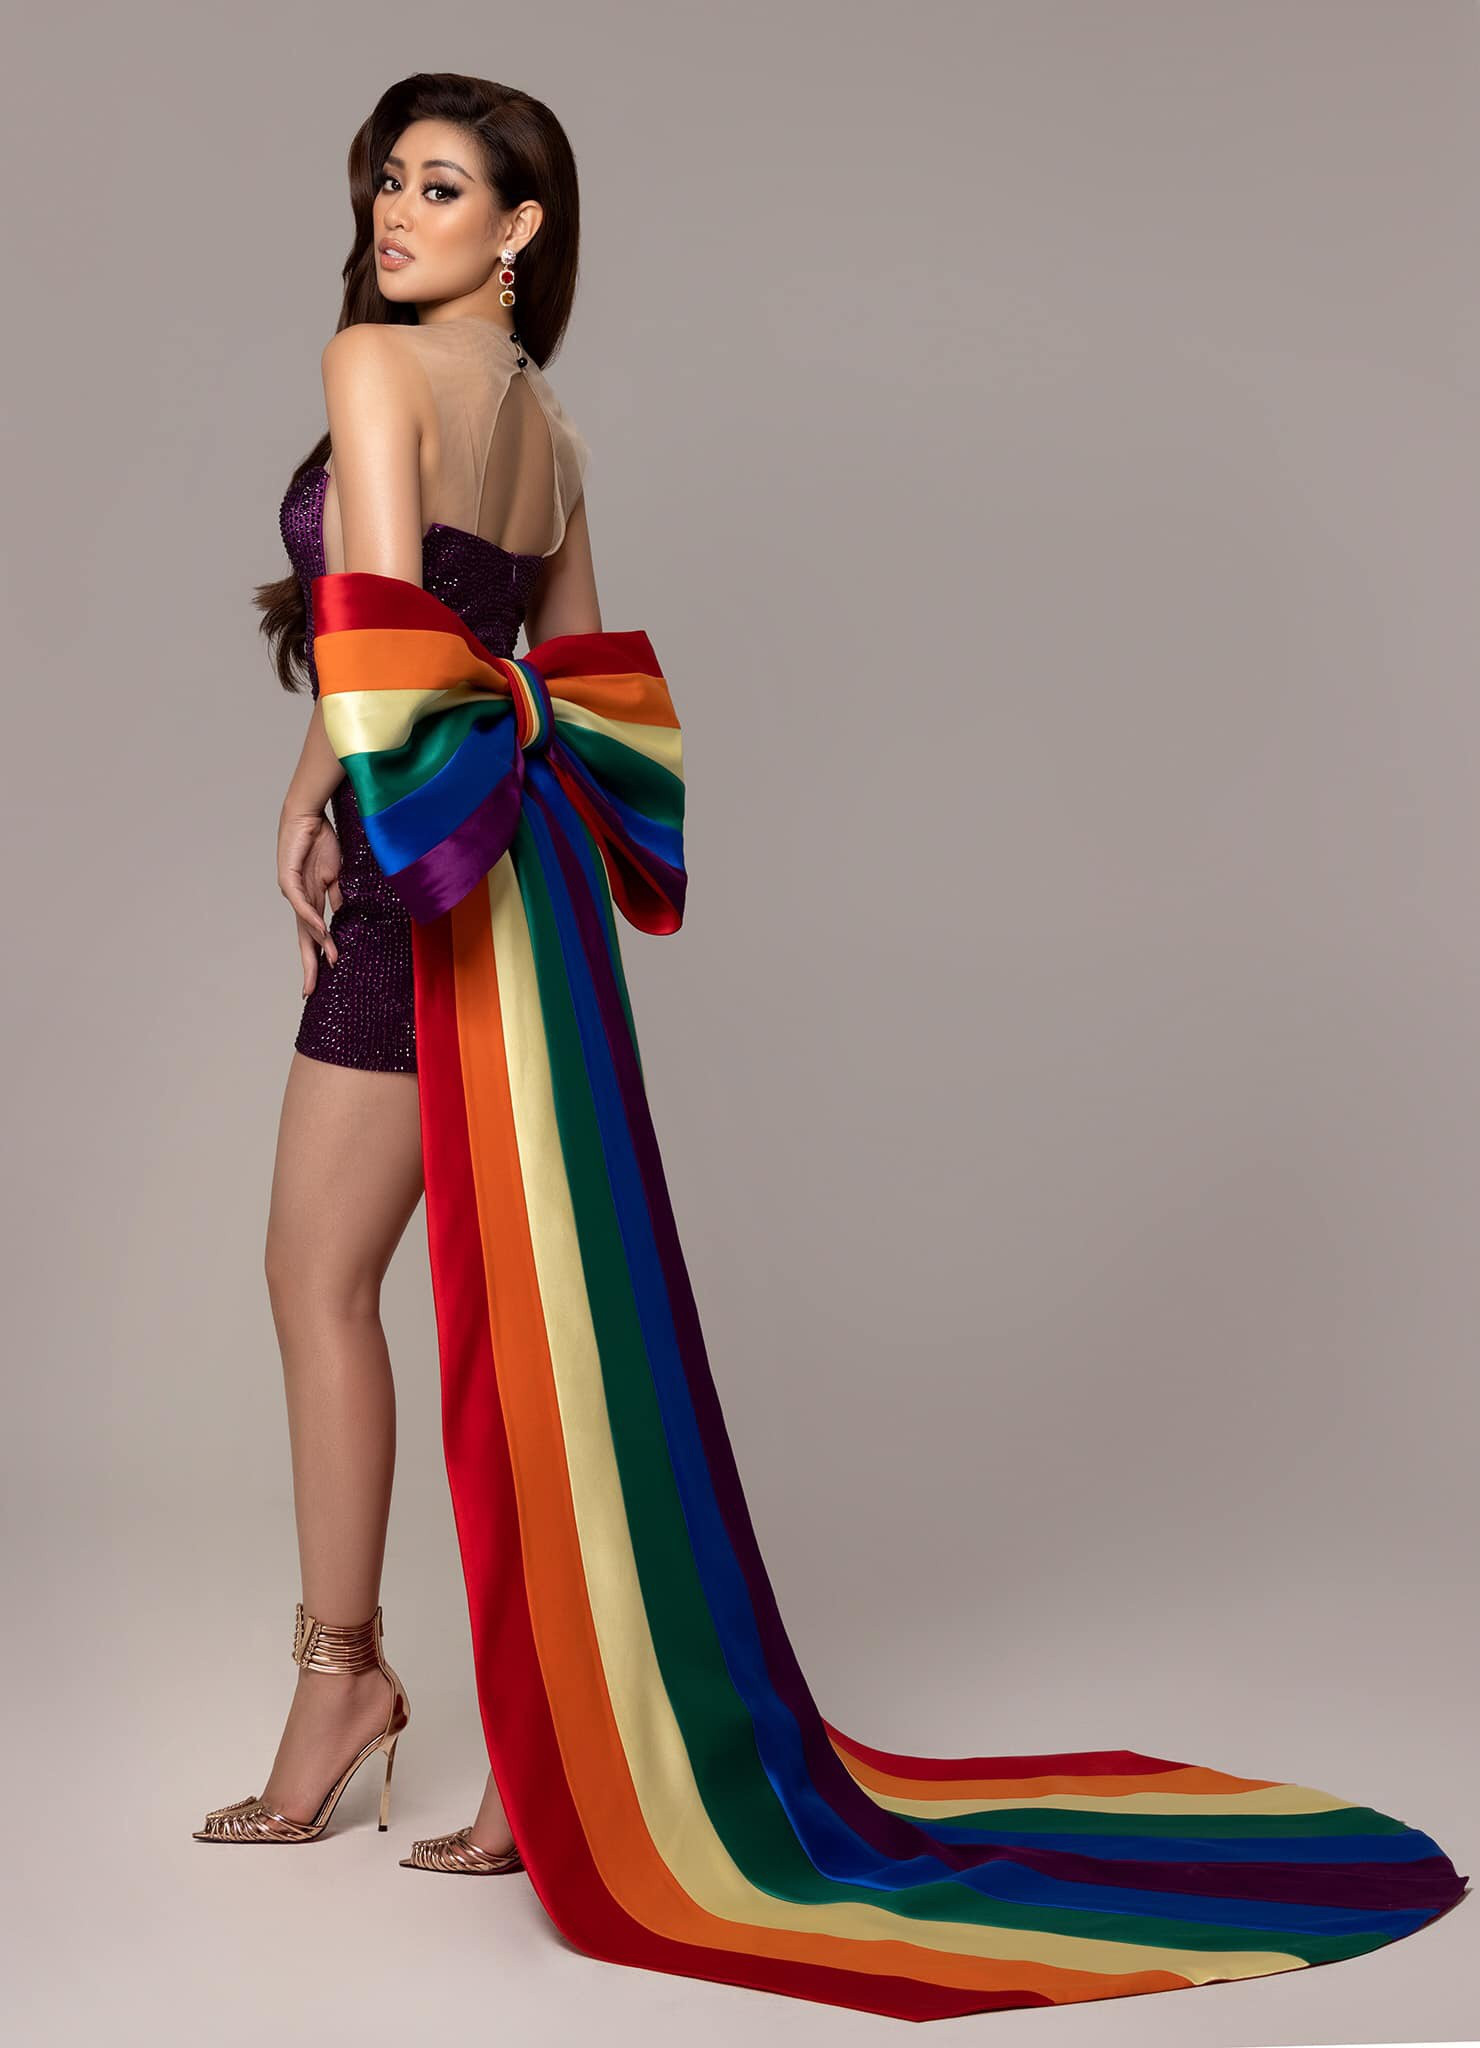 Hoa hậu Tiểu Vy và nhiều hoa hậu nổi tiếng diện đồ ủng hộ cộng đồng LGBTQ+ - ảnh 12